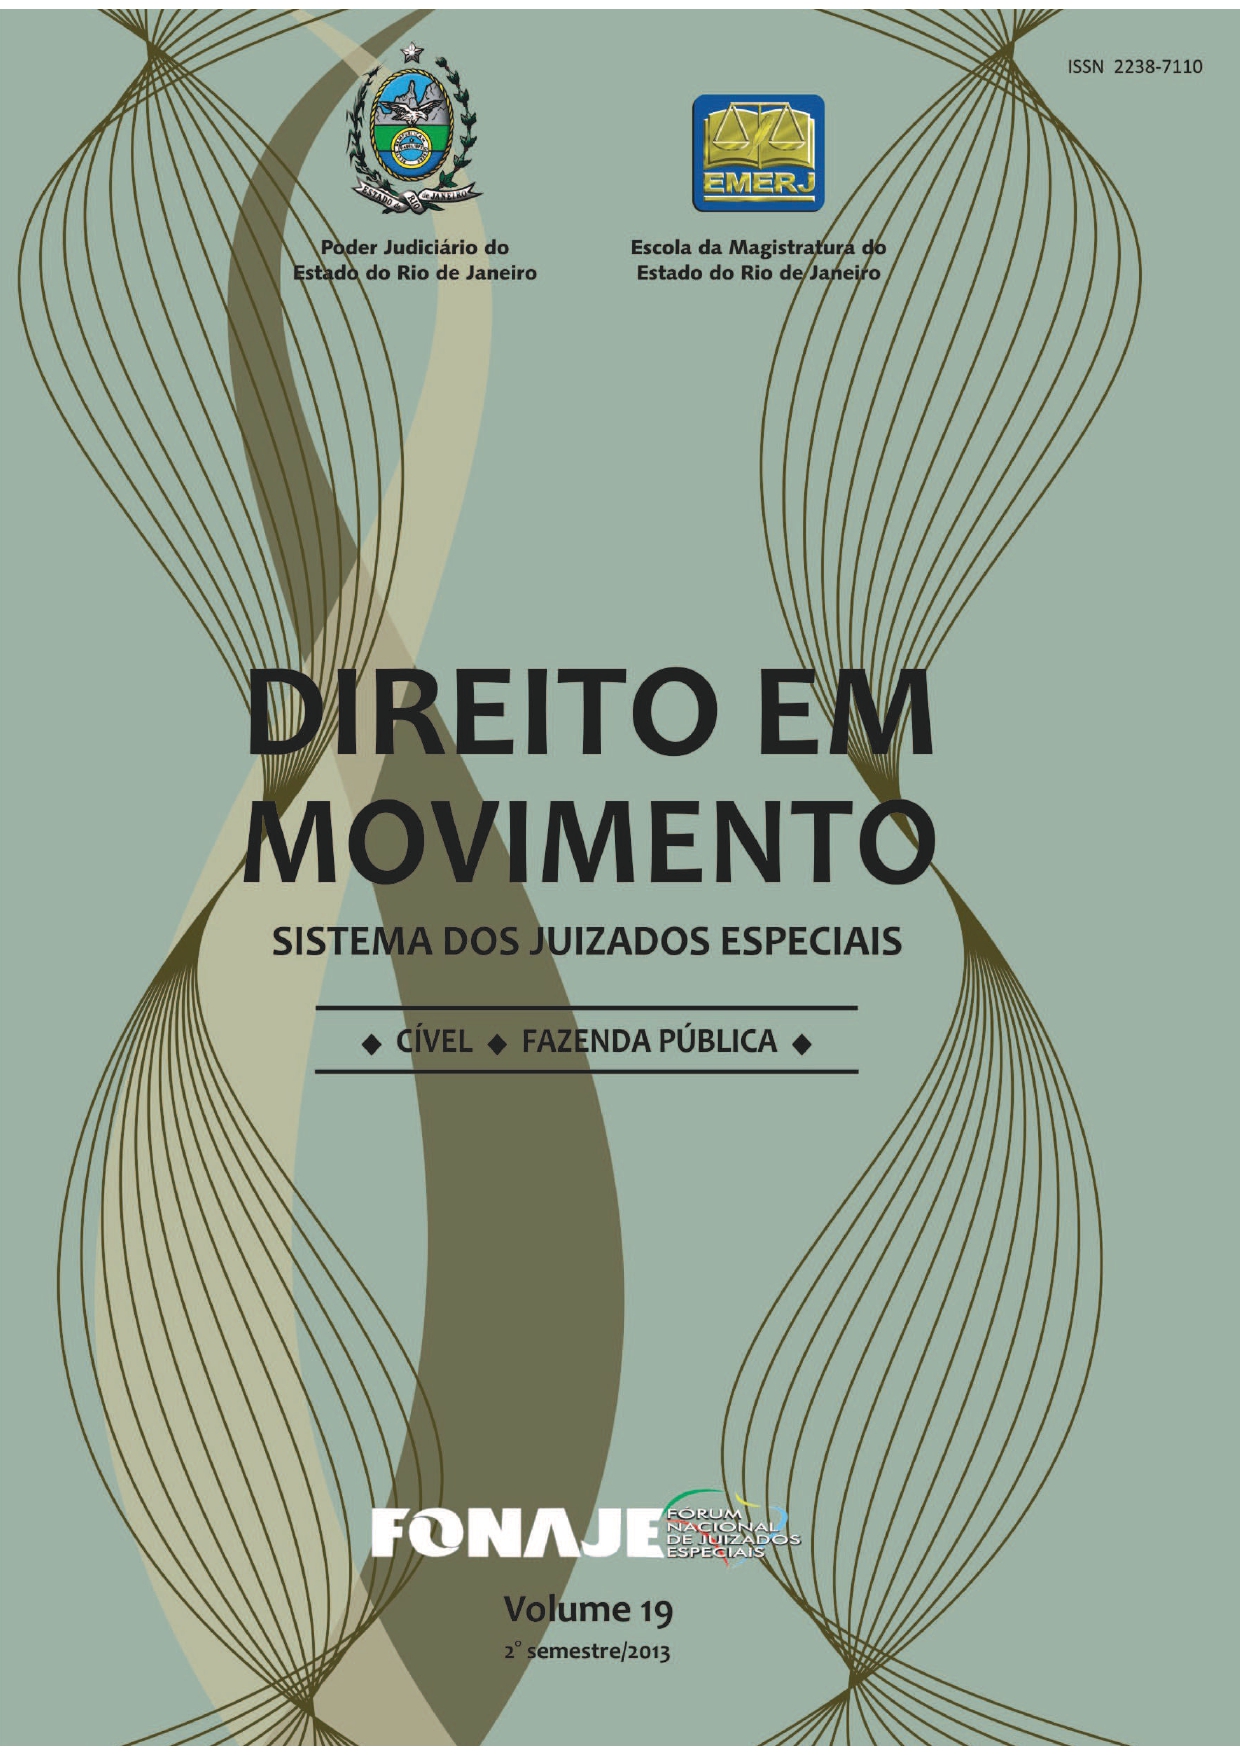 					Visualizar v. 19 (2013): Revista Direito em Movimento (Numeração antiga)
				